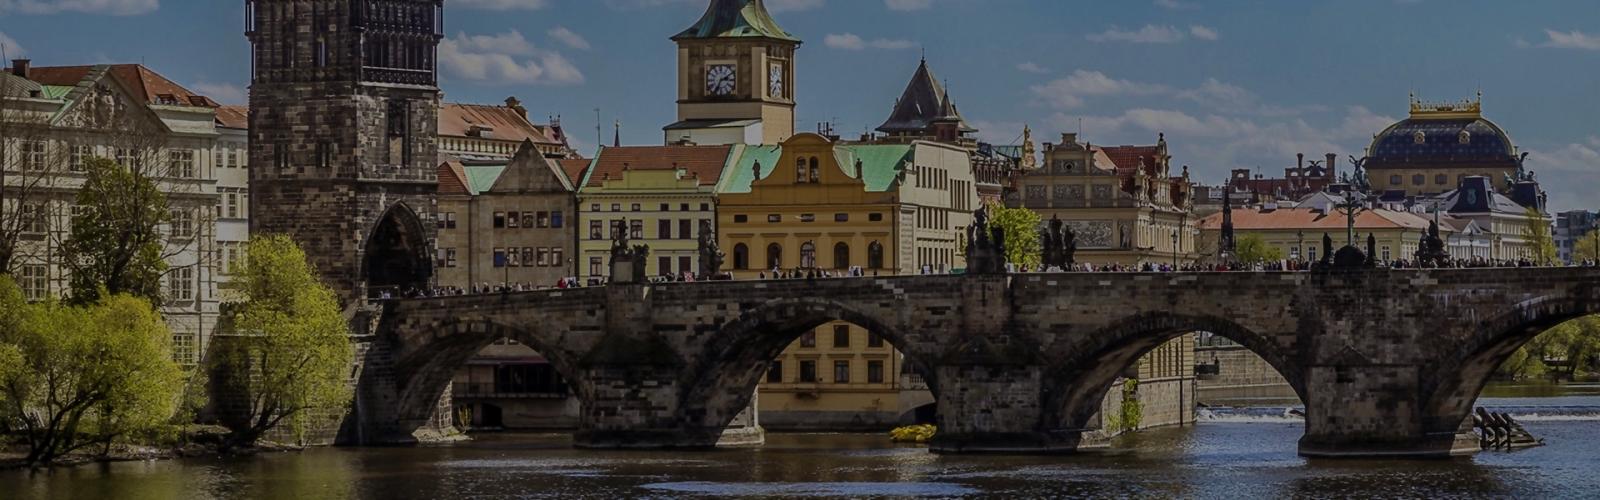 Отели 3* в Праге - как выбрать лучшее?